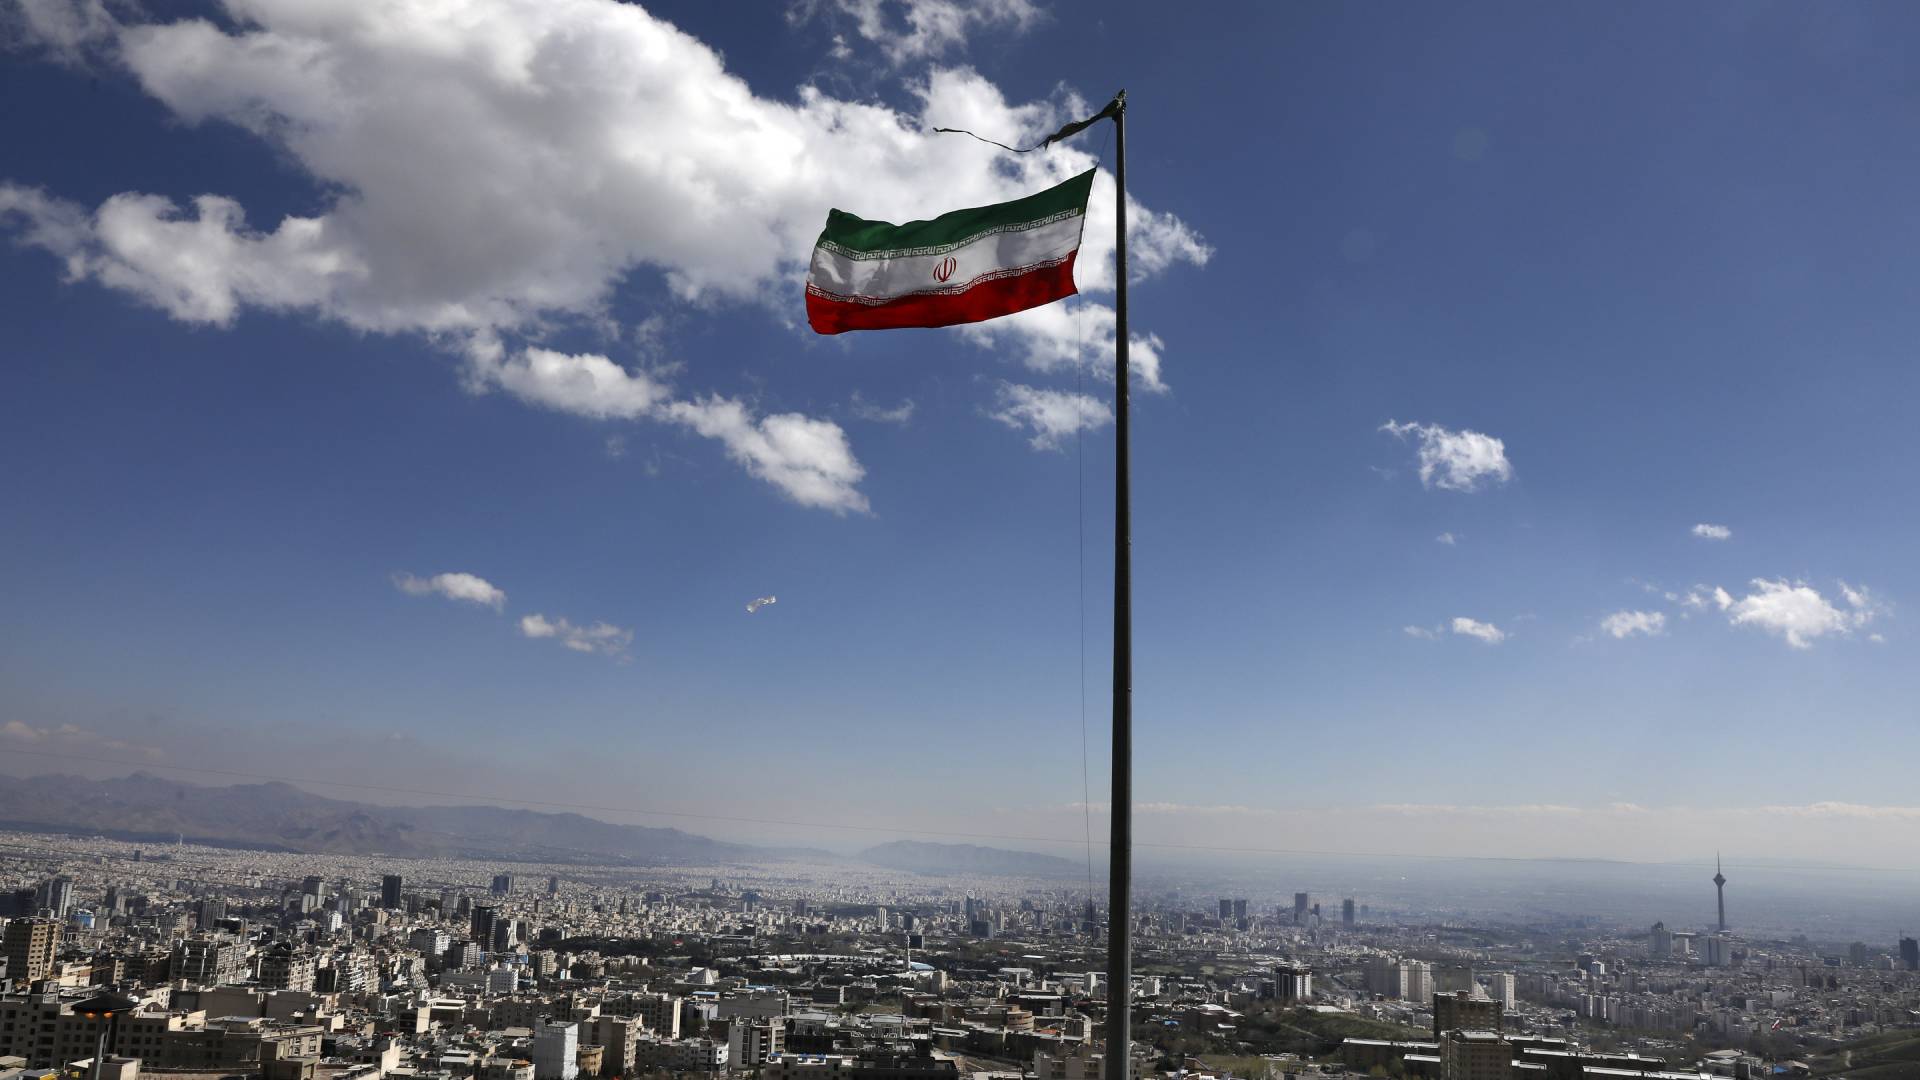 Τζο Μπάιντεν για επίθεση στην Ιορδανία: «Αποφάσισα τα αντίποινα, όχι σε γενικευμένο πόλεμο με το Ιράν»